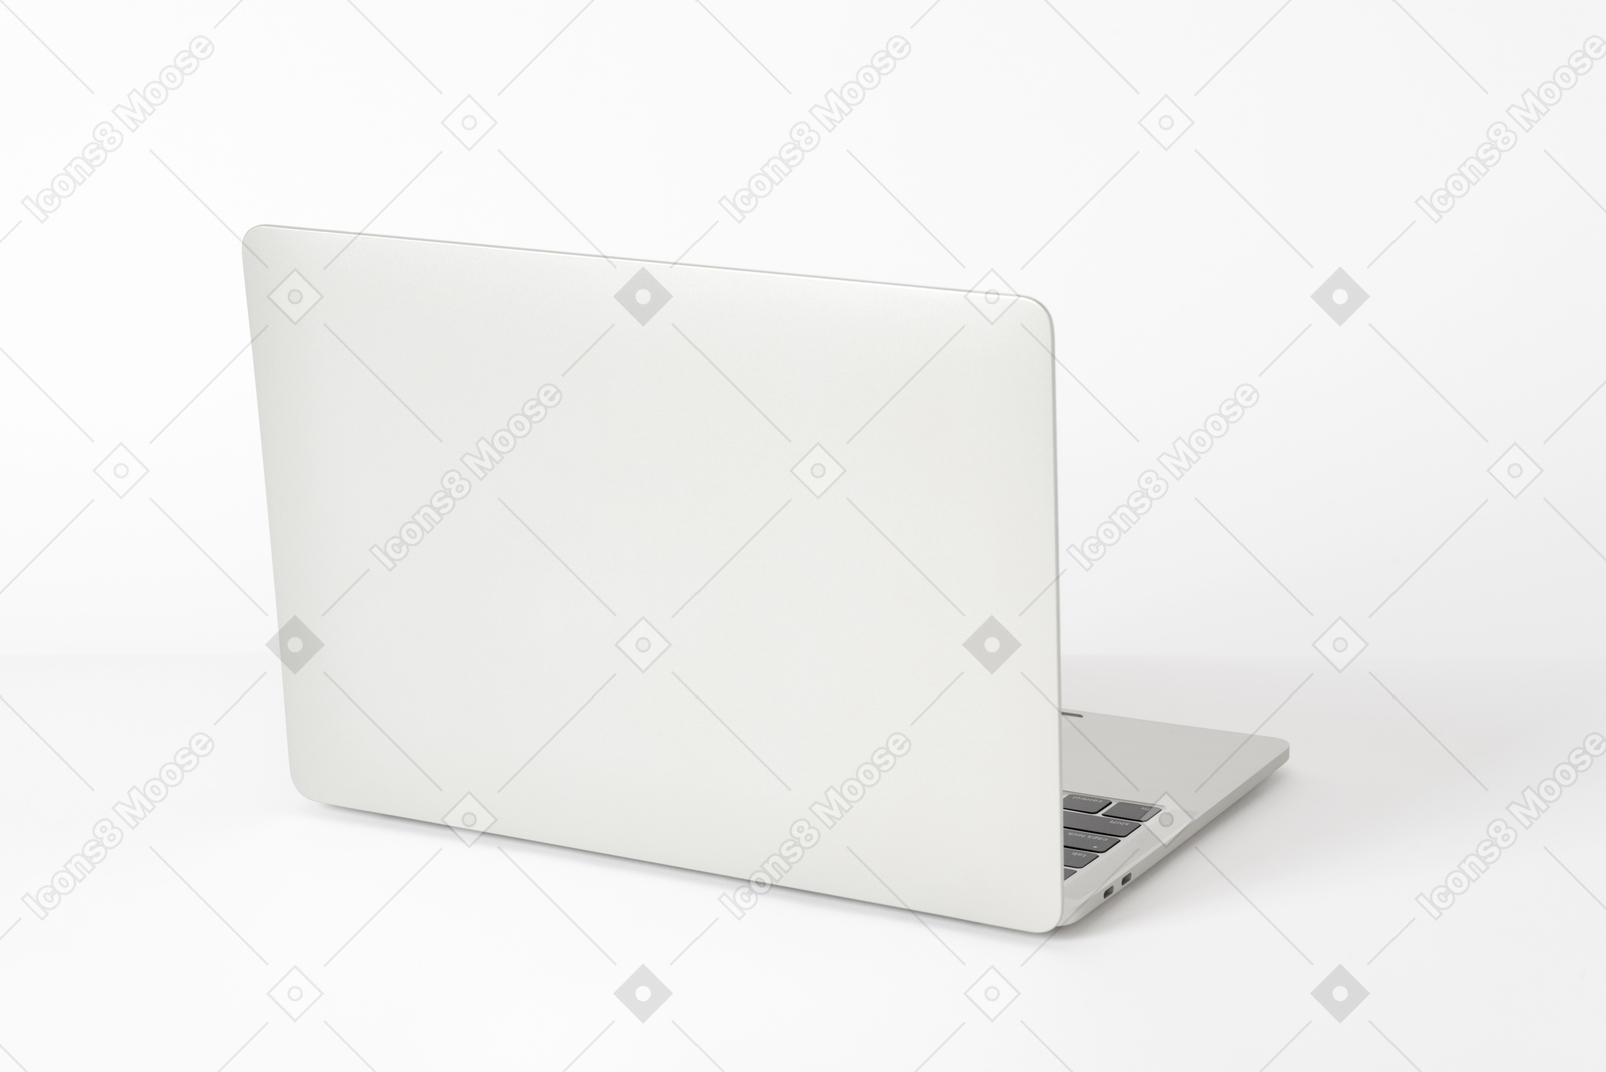 Computer portatile aperto su un tavolo